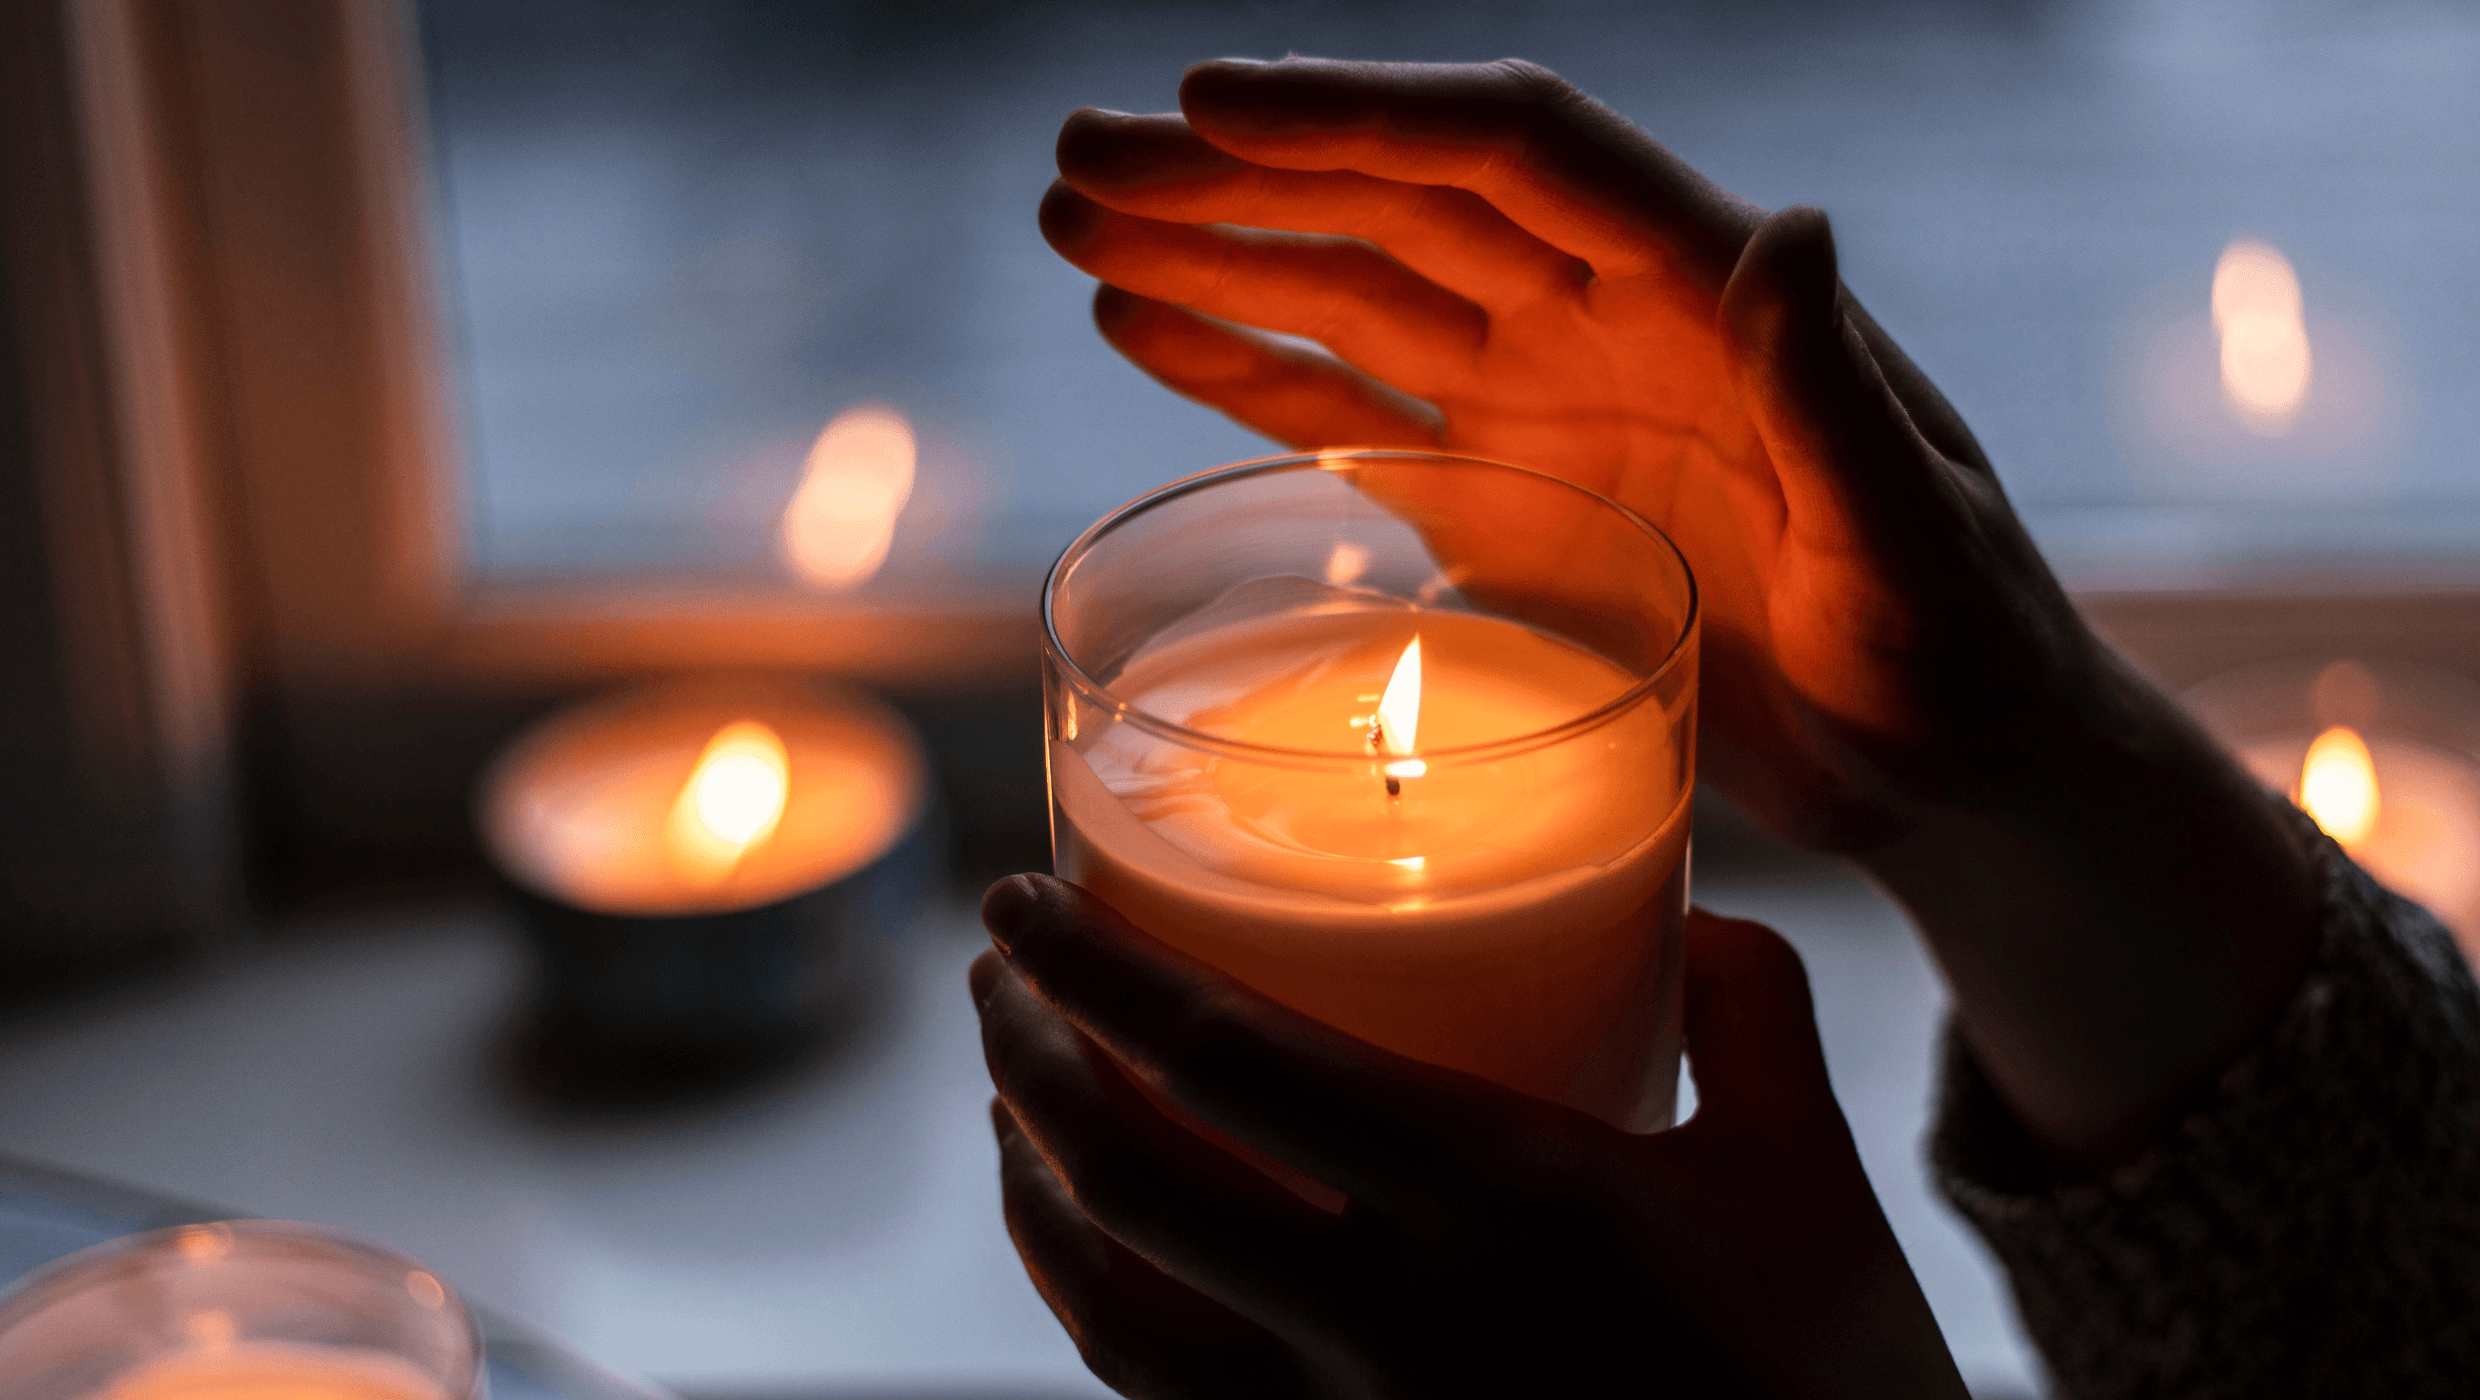 Nainen pitää kädessään kynttilää  ja suojaa sen liekkiä toisella kädellään, kun taustalla on hämärää ja ikkunalaudalla palaa useita kynttilöitä